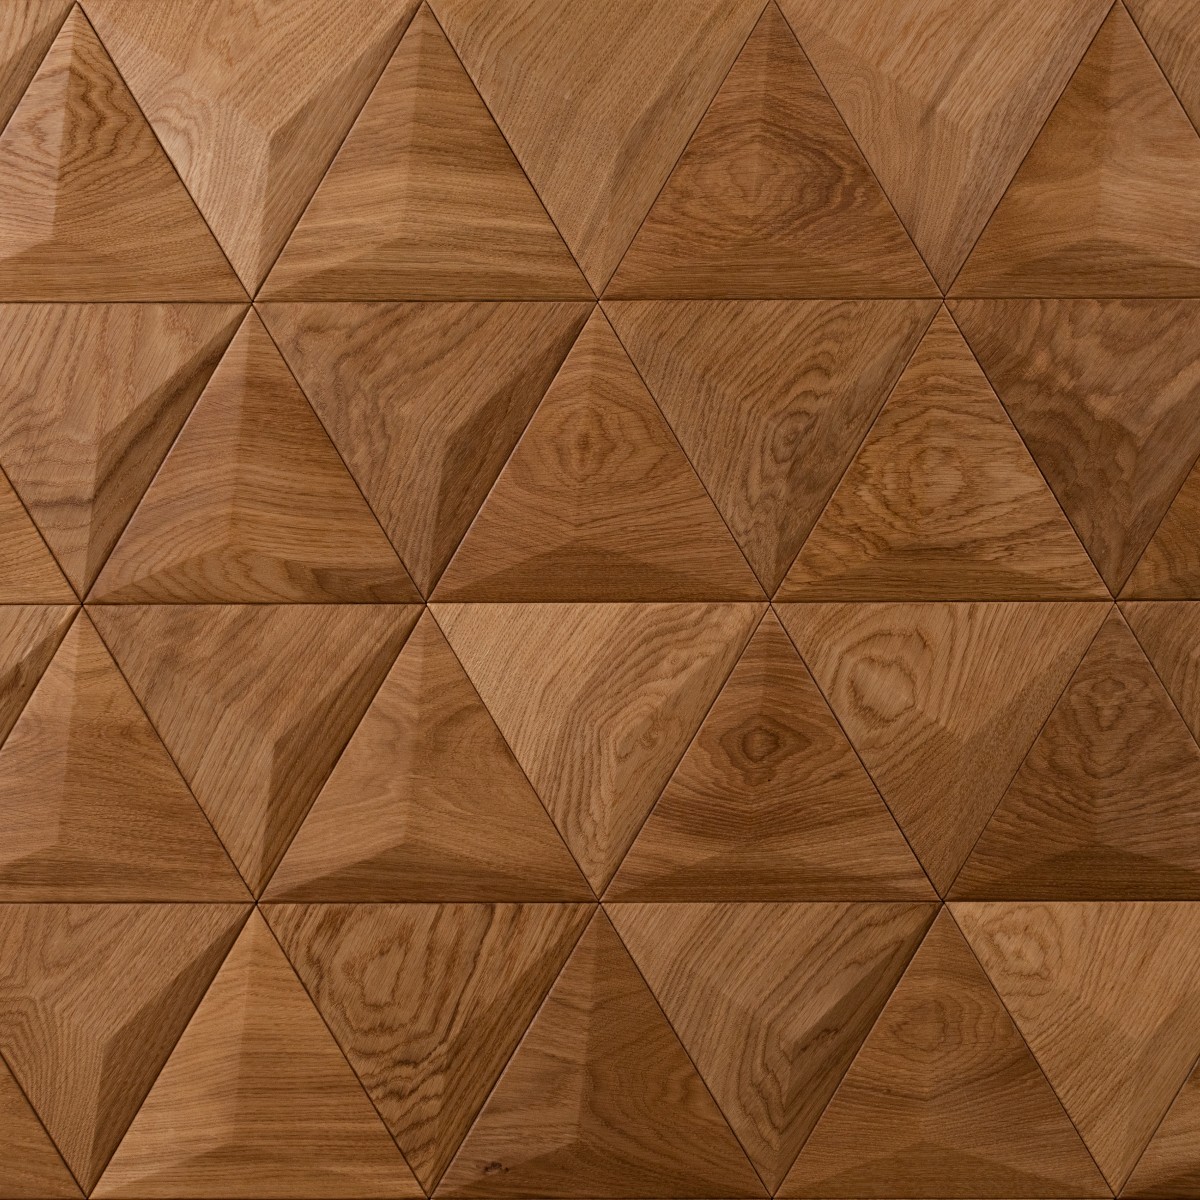 Panouri decorative 3D din lemn de stejar Pyramid, Panouri decorative din lemn, Panouri decorative 